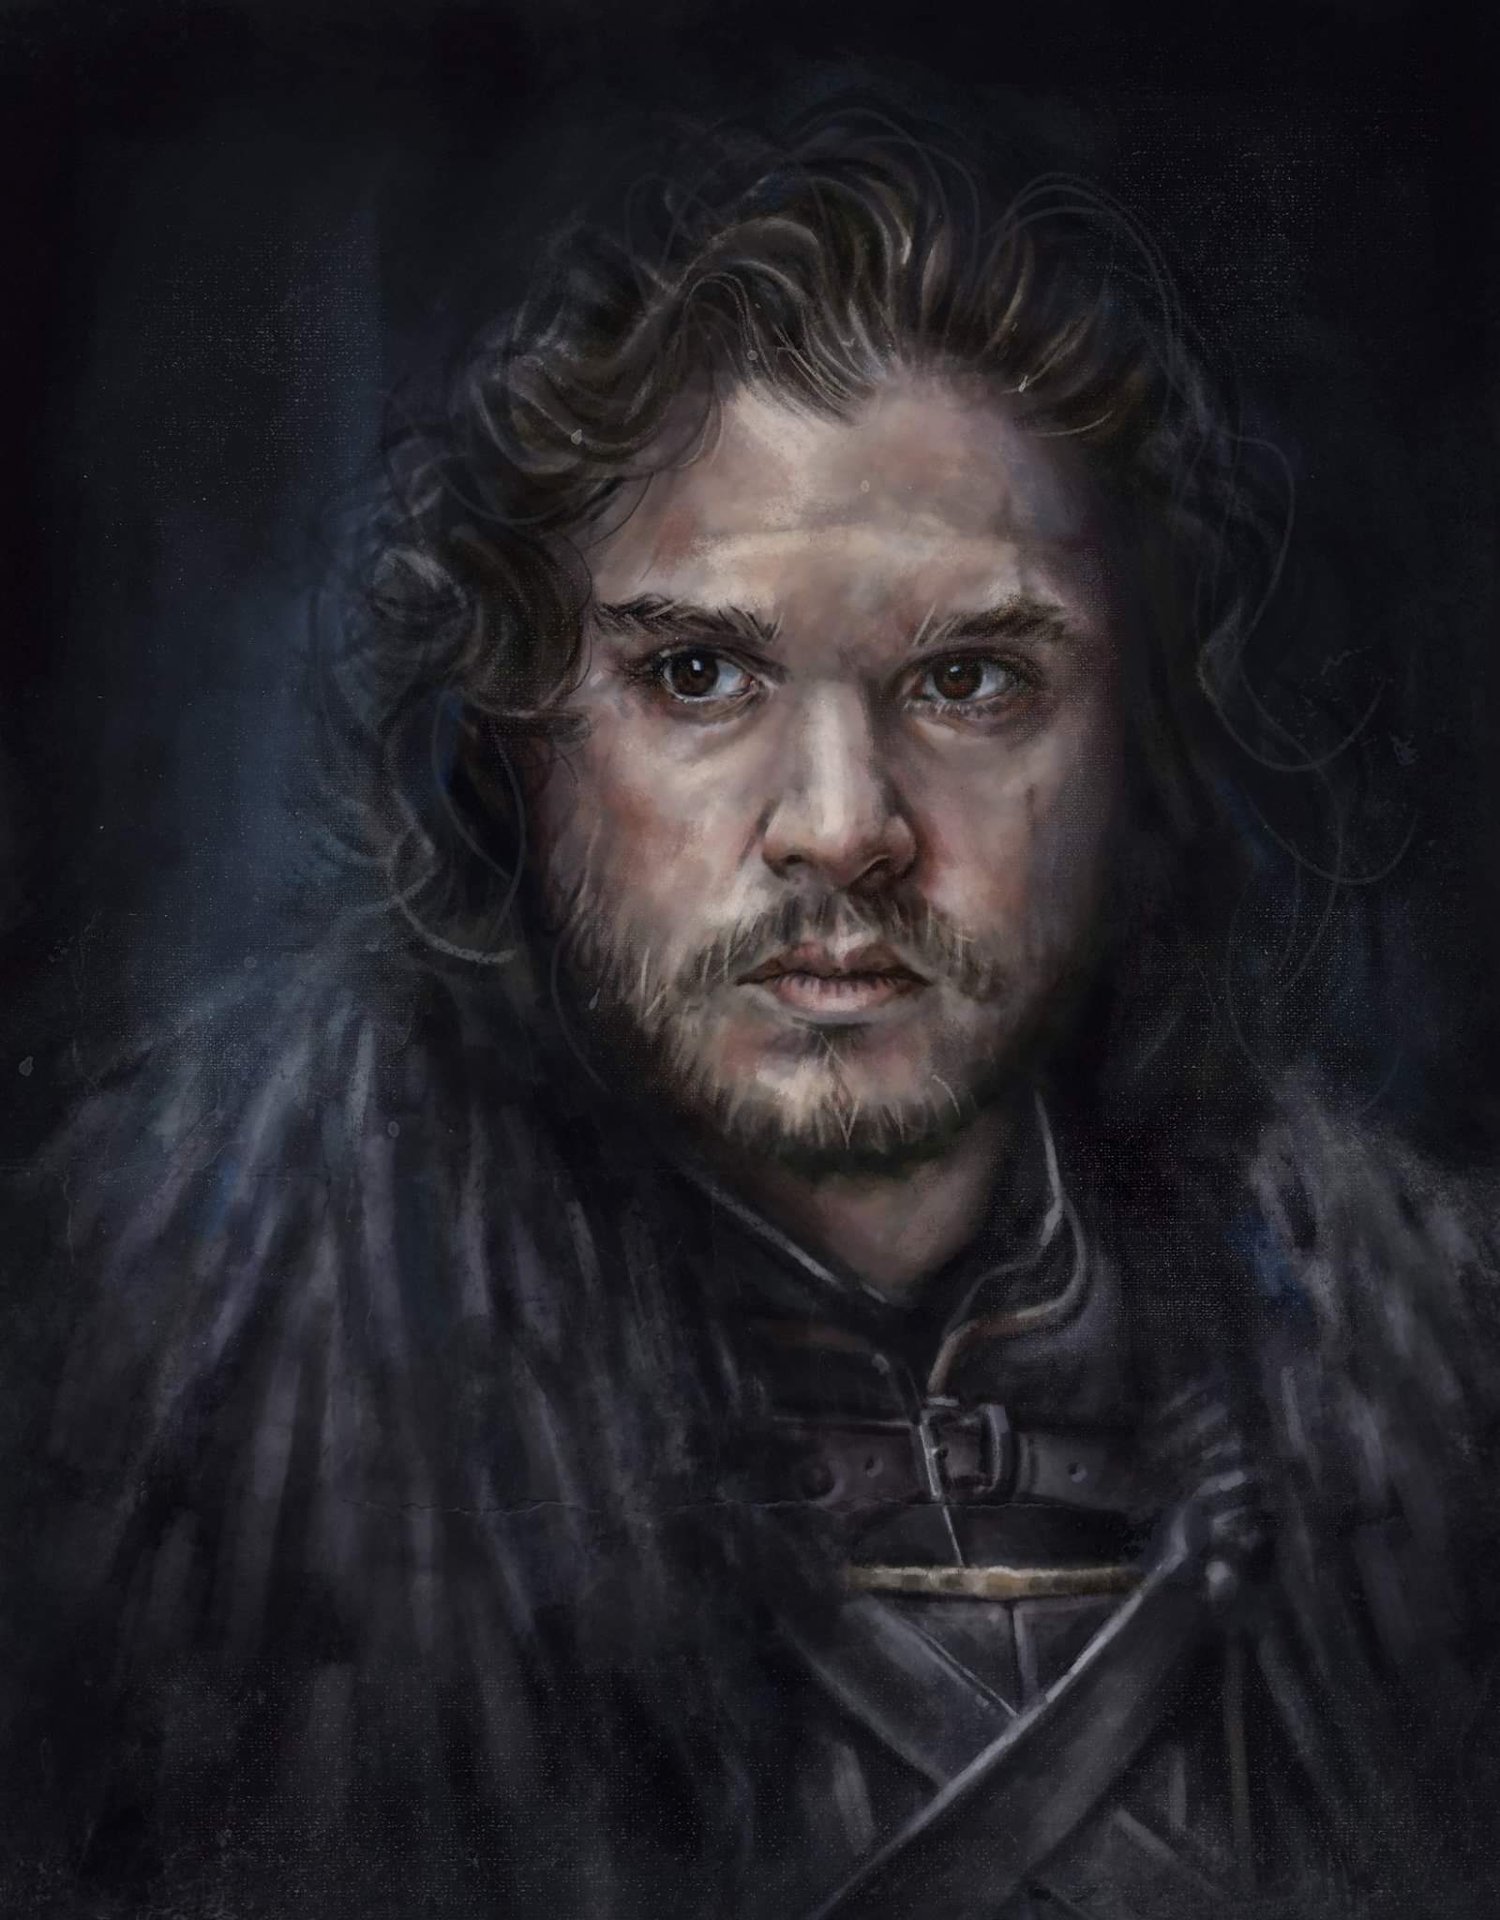 Image of Jon Snow